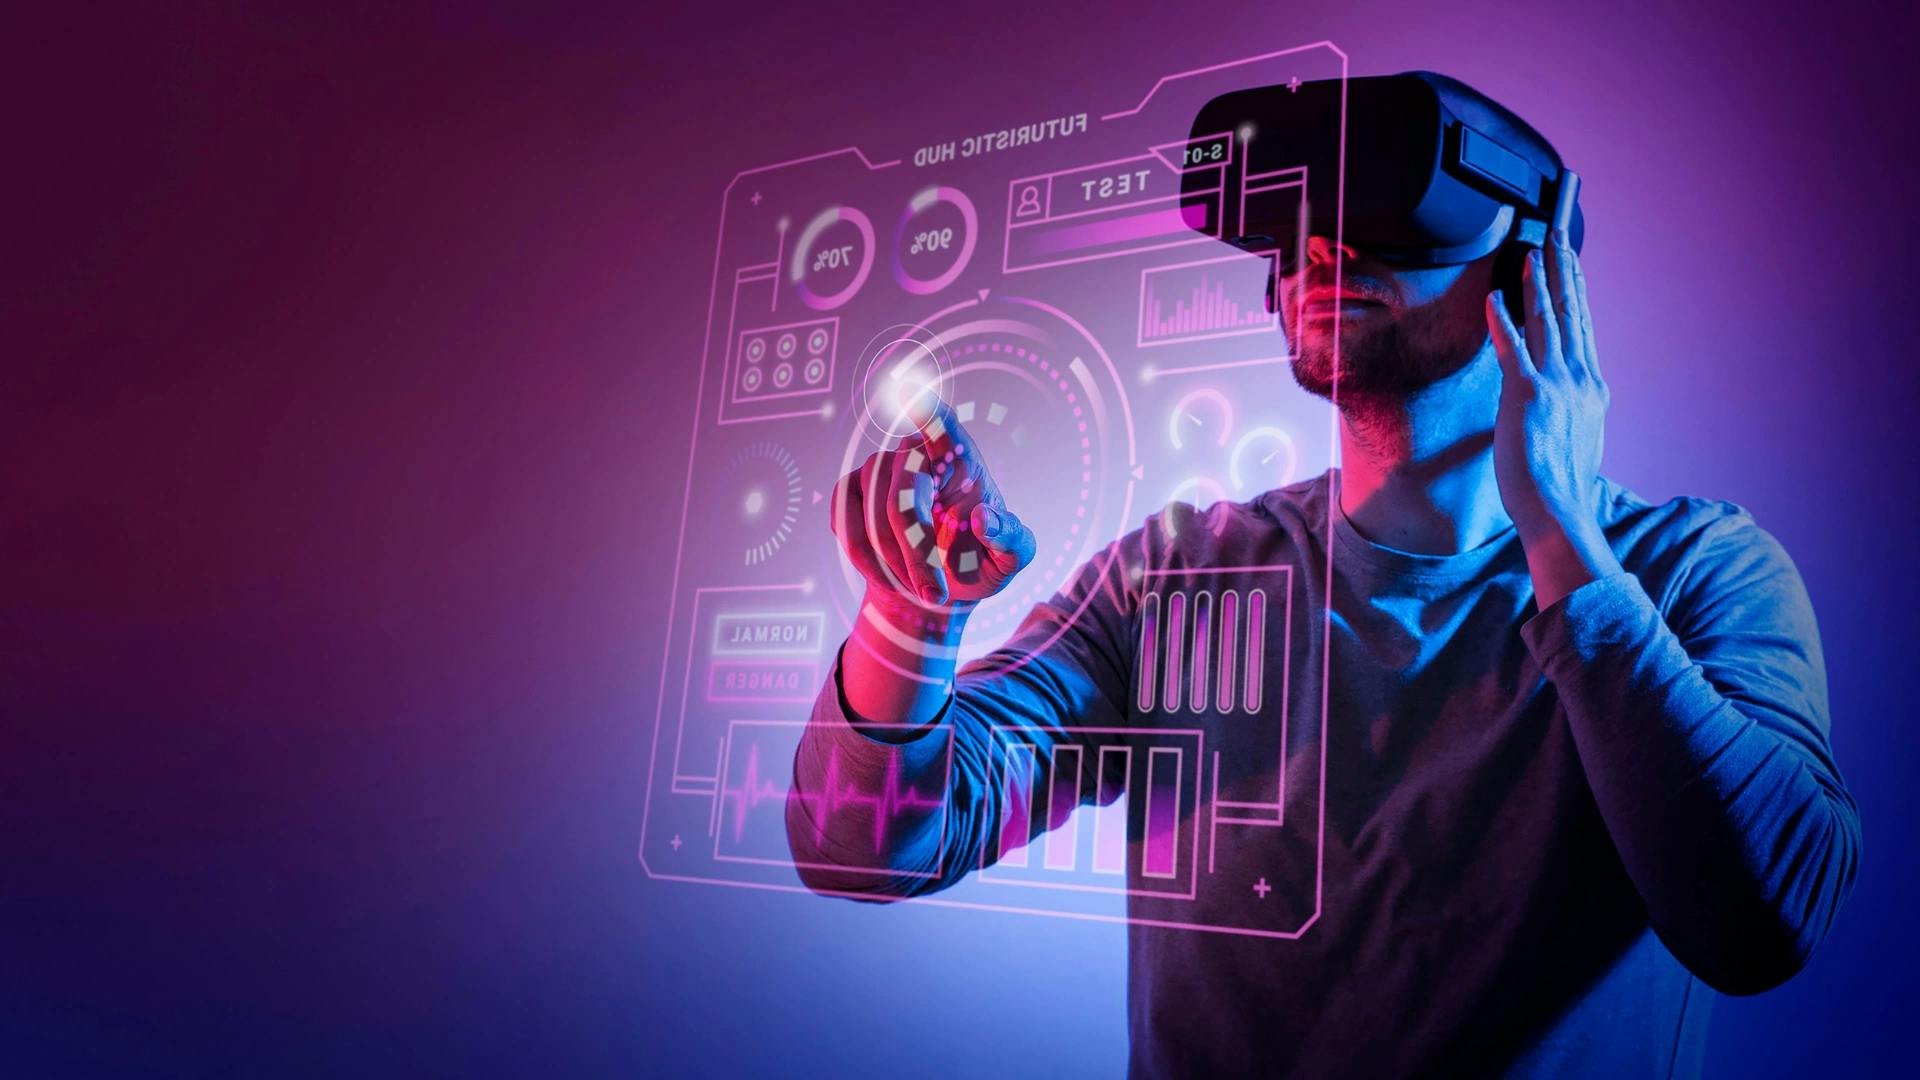 Imagem de um homem utilizando óculos de realidade virtual, uma das maiores tendências de tecnologia.